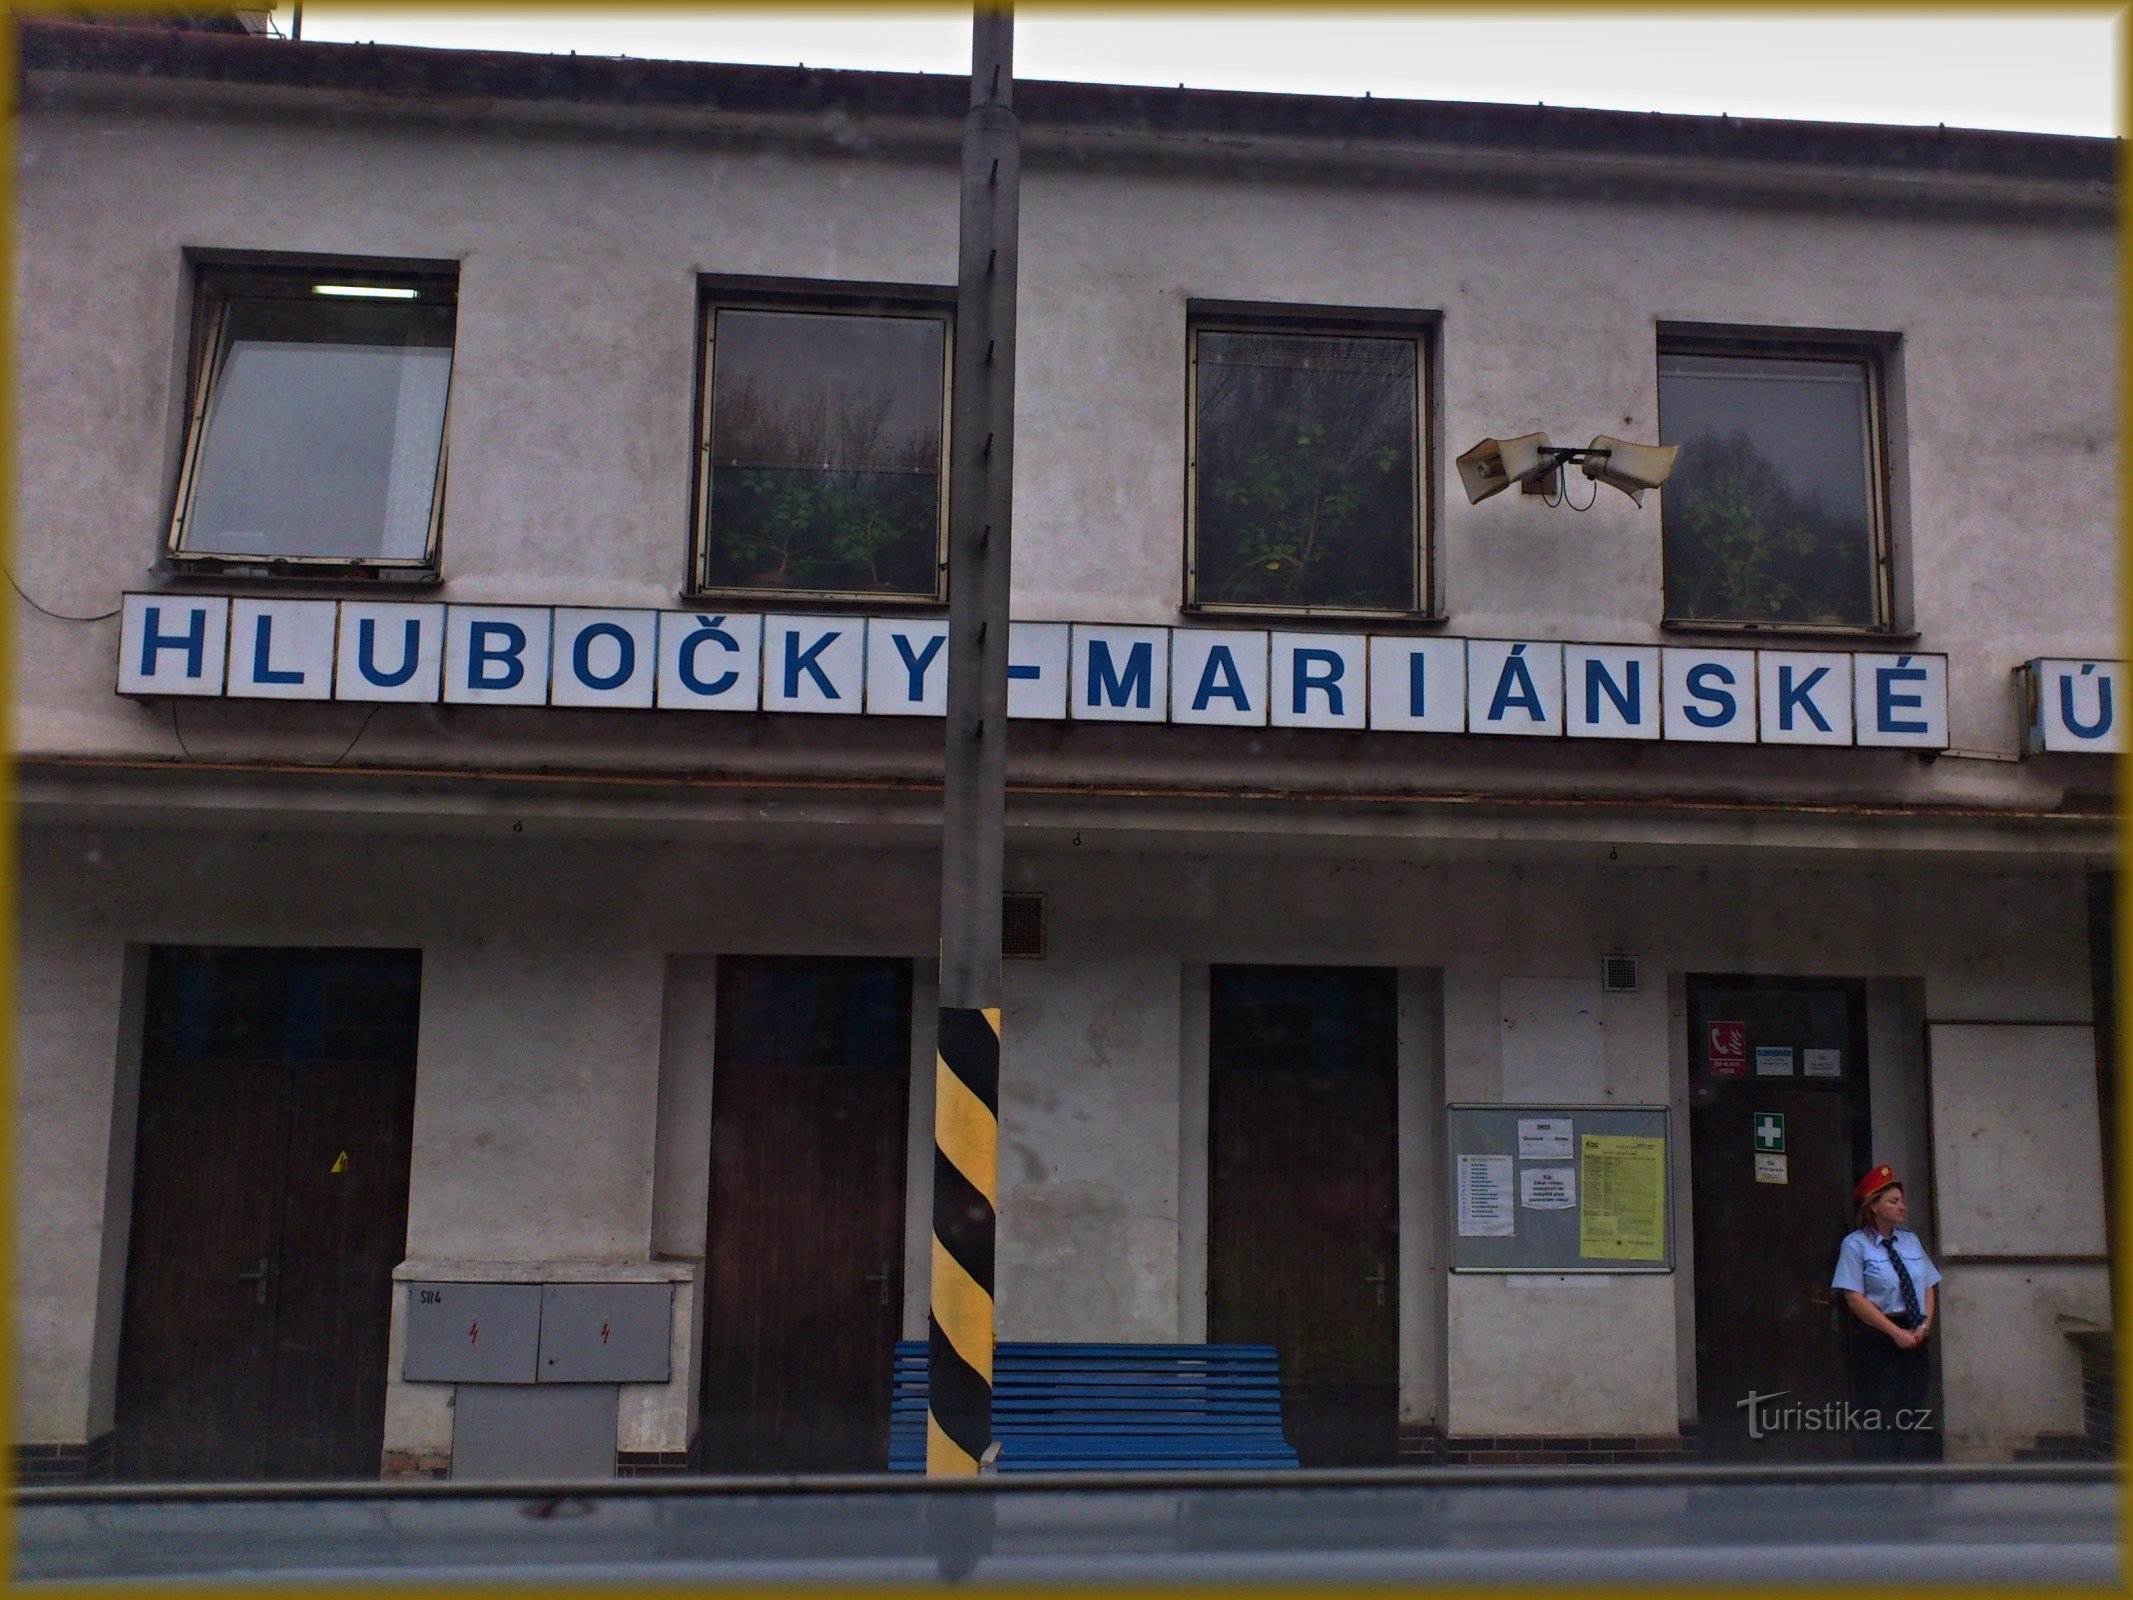 Κοιλάδα Hlubočky-Marianske - σιδηροδρομικός σταθμός